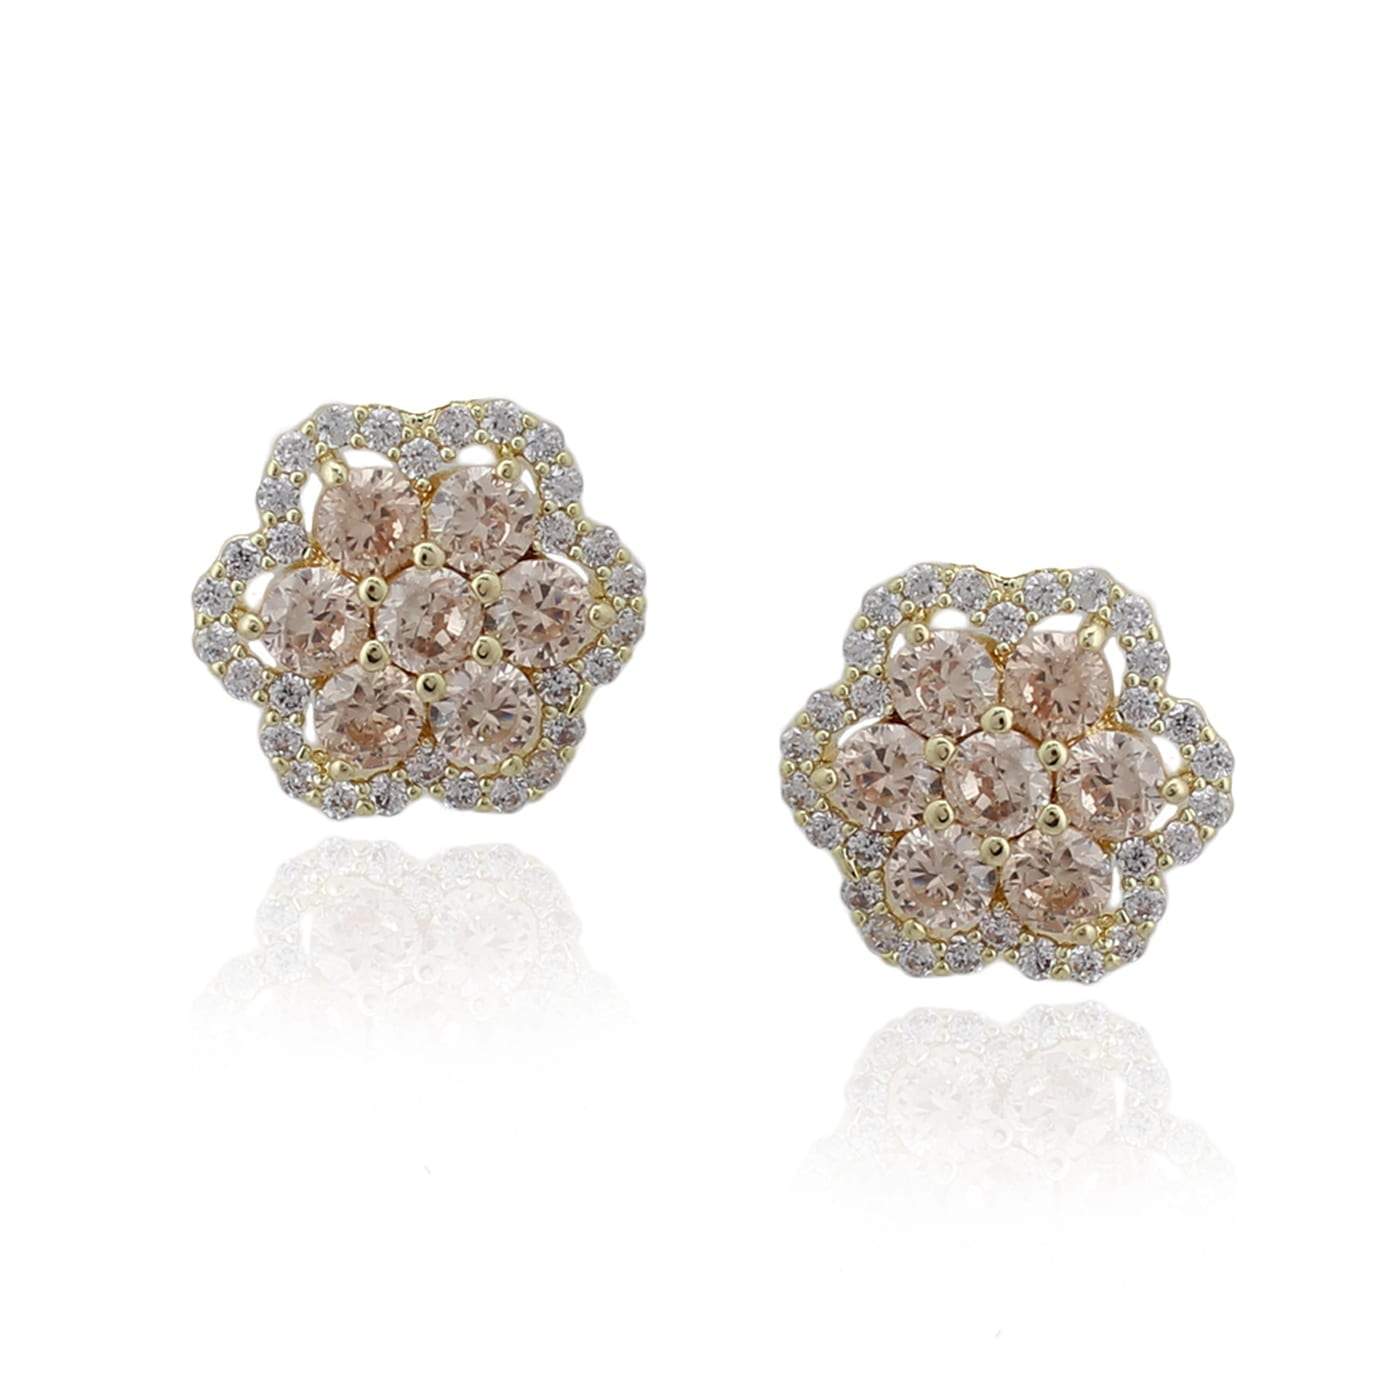 Seven Stone Flower Stud Earrings - HK Jewels